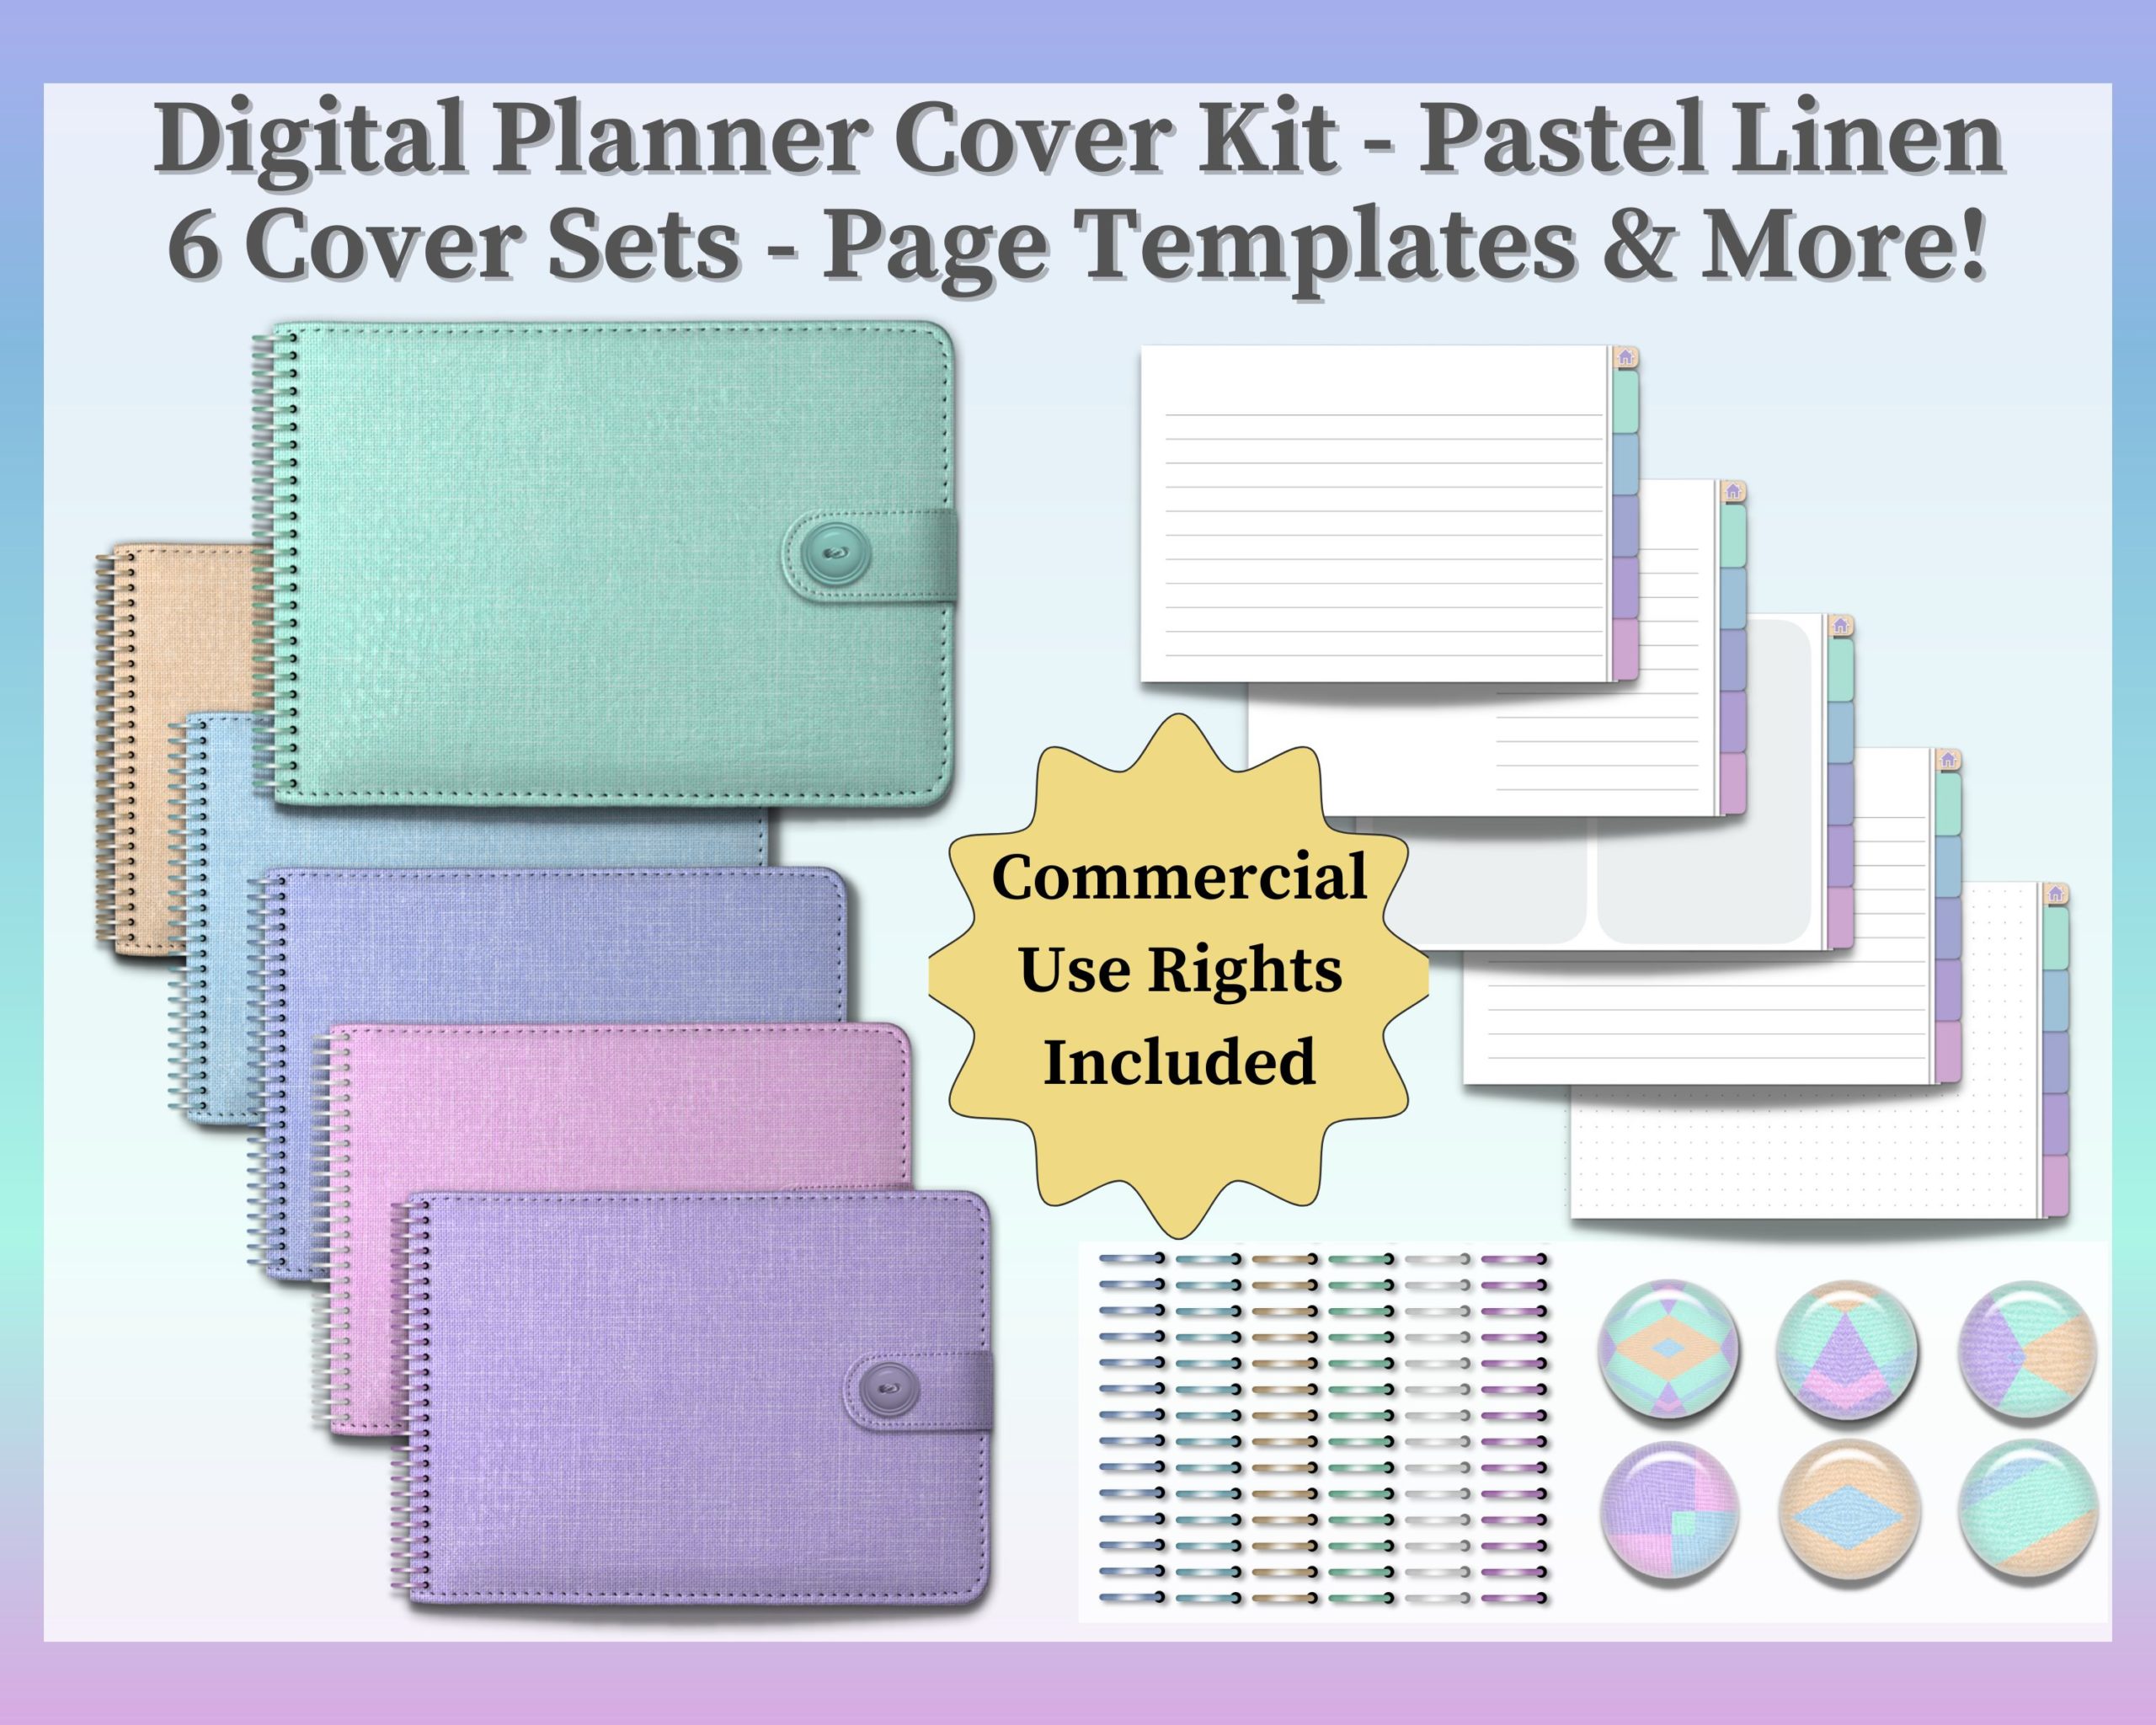 Digital Planner Cover Kit